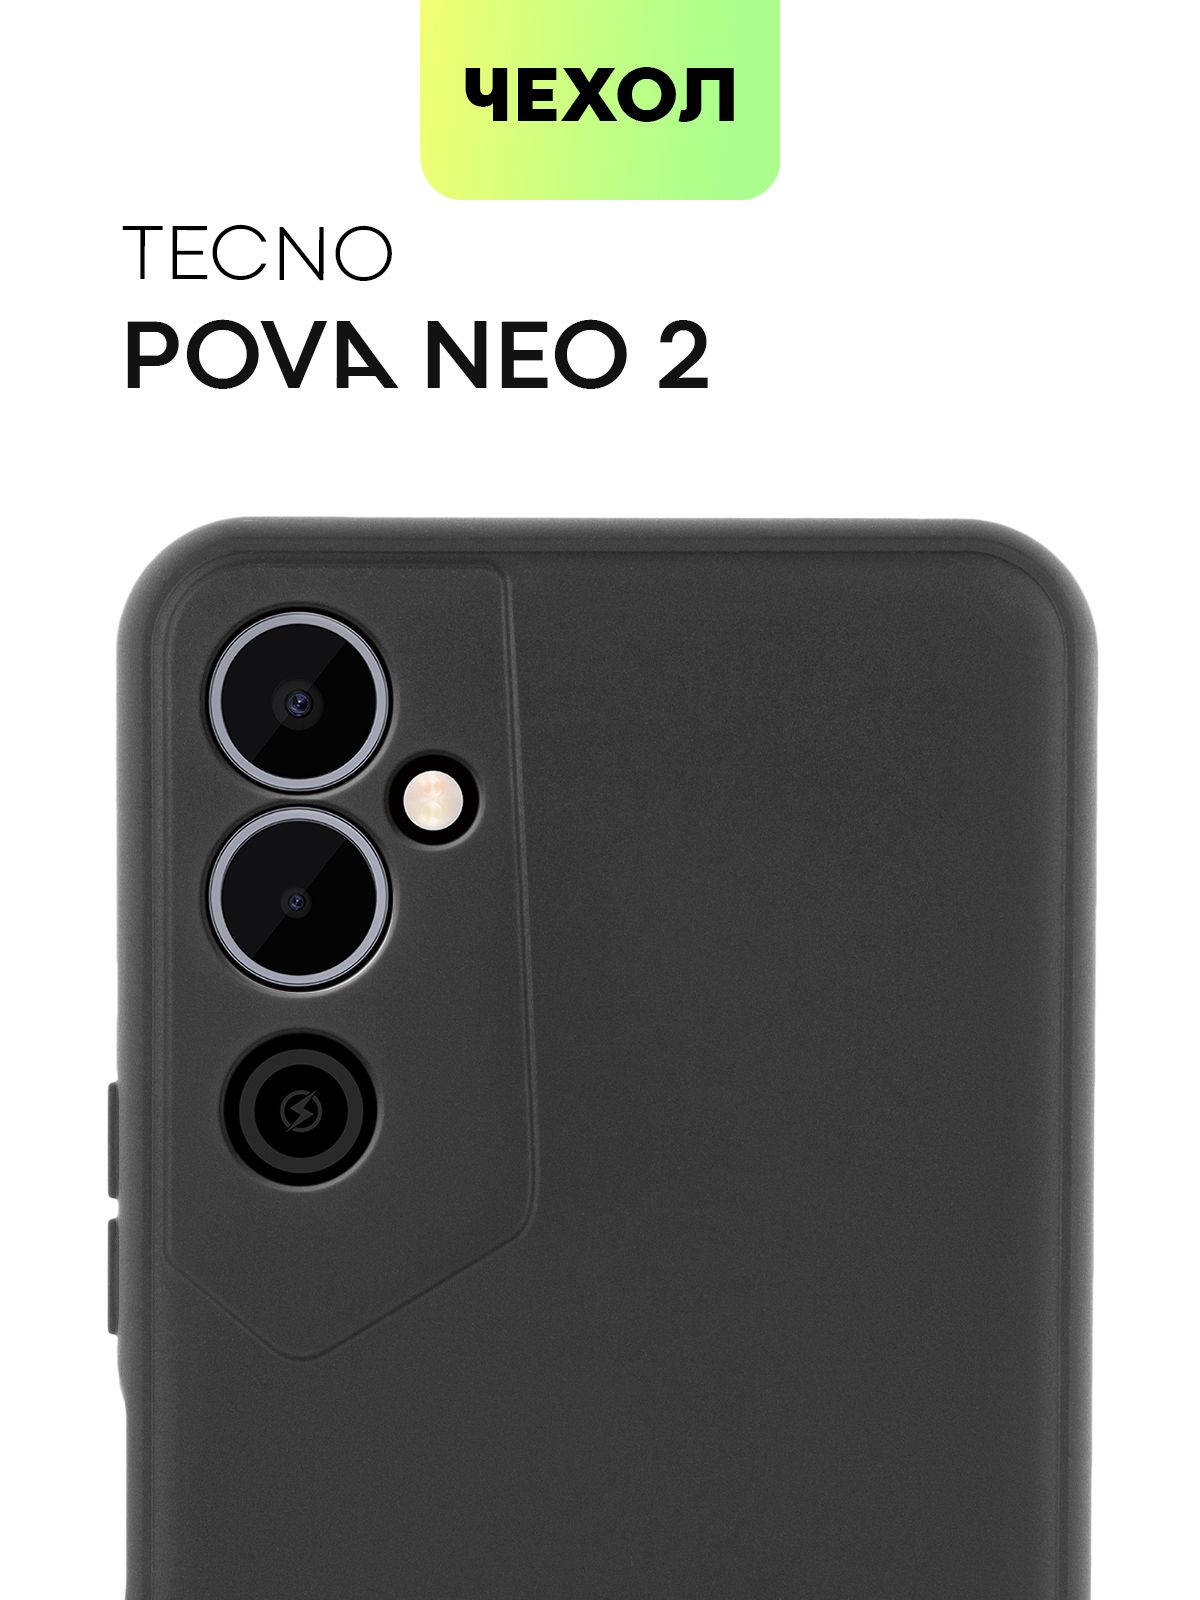 Чехол техно пова нео 3. Смартфон Техно пова Нео 2. Чехол для Techno Pova Neo 2. Чехол на смартфон Tecno Pova Neo 2. Чехол для телефона Techno Pova Neo 2.